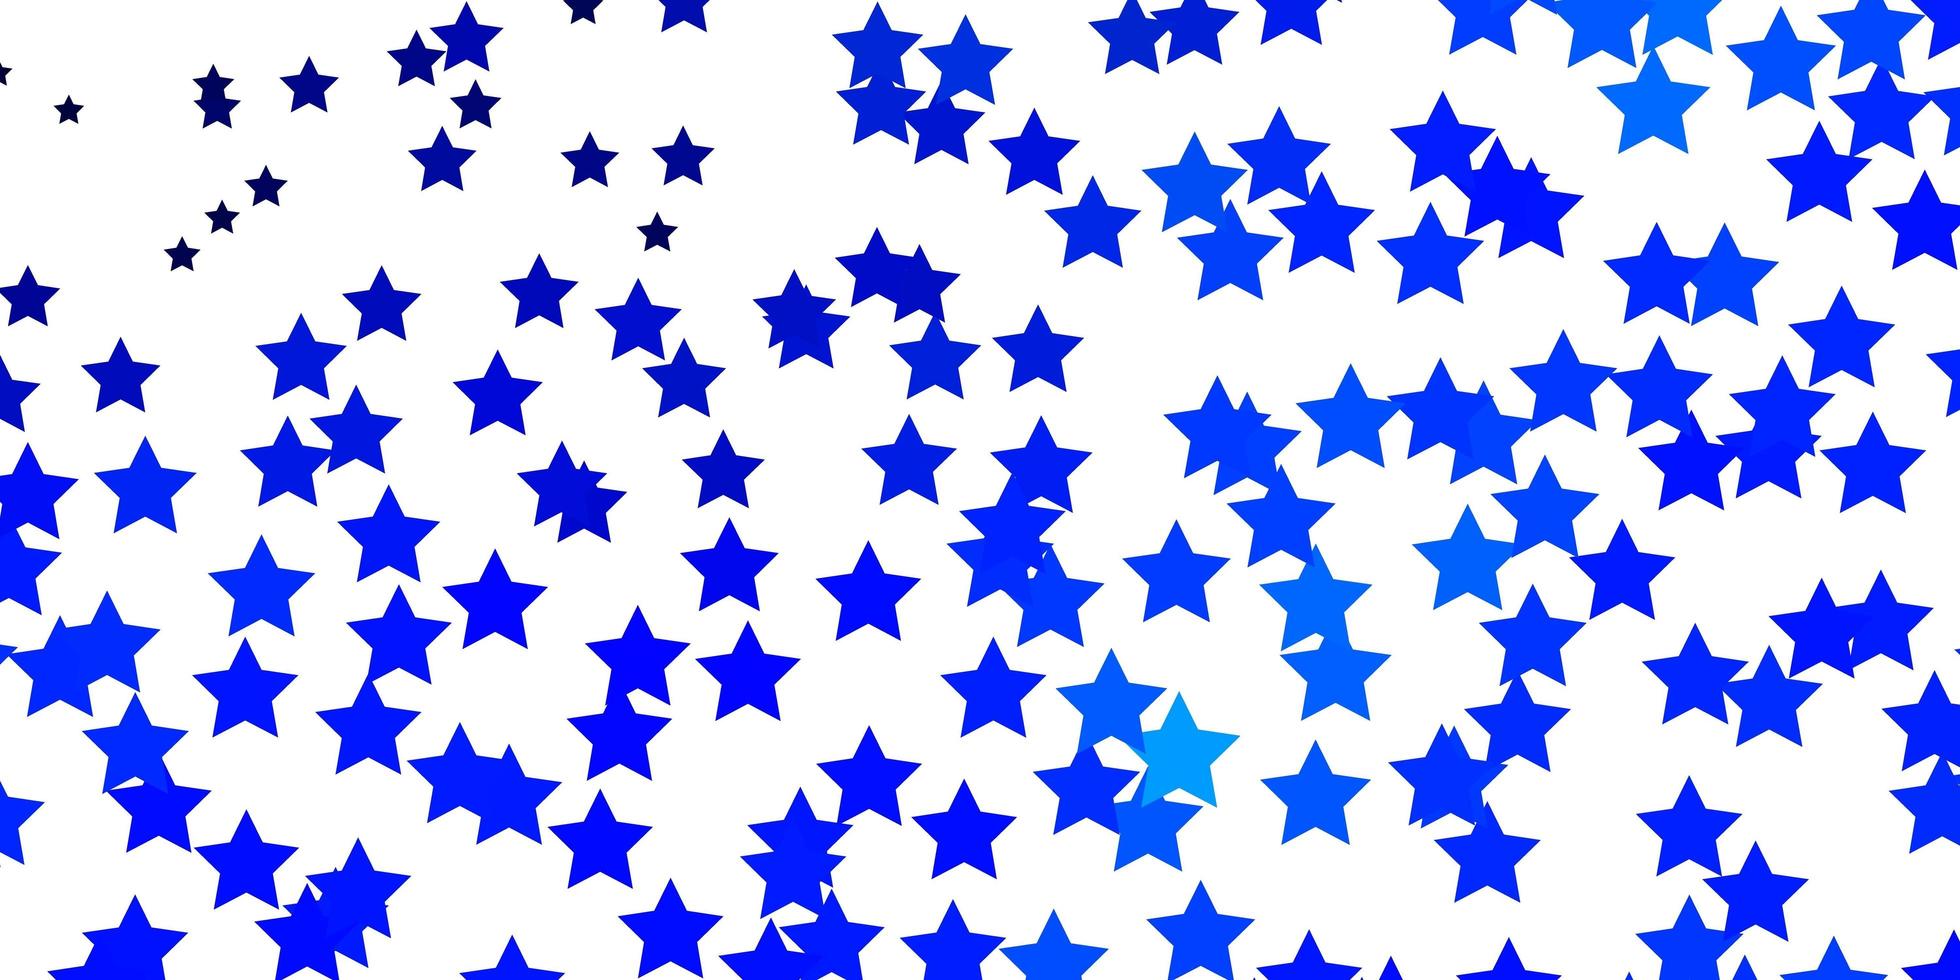 mörkblå vektorstruktur med vackra stjärnor. färgglad illustration med abstrakta lutningsstjärnor. mönster för webbplatser, målsidor. vektor